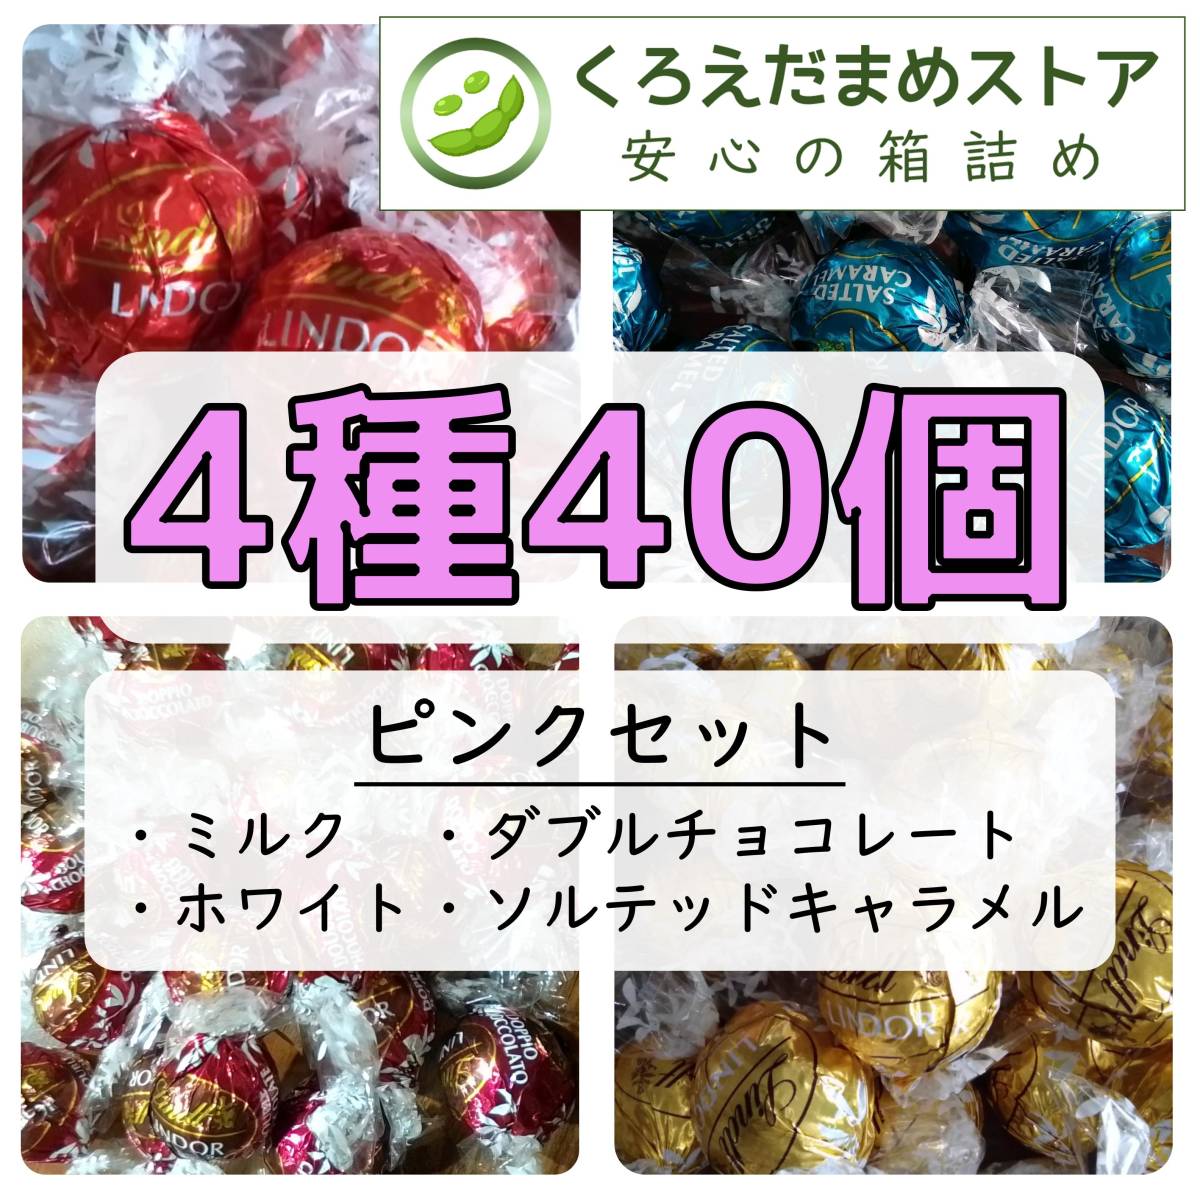 【箱詰・スピード発送】Q40 4種40個 ピンクセット リンツ リンドール チョコレート ジップ袋詰 ダンボール箱梱包 送料無料 くろえだまめの画像1